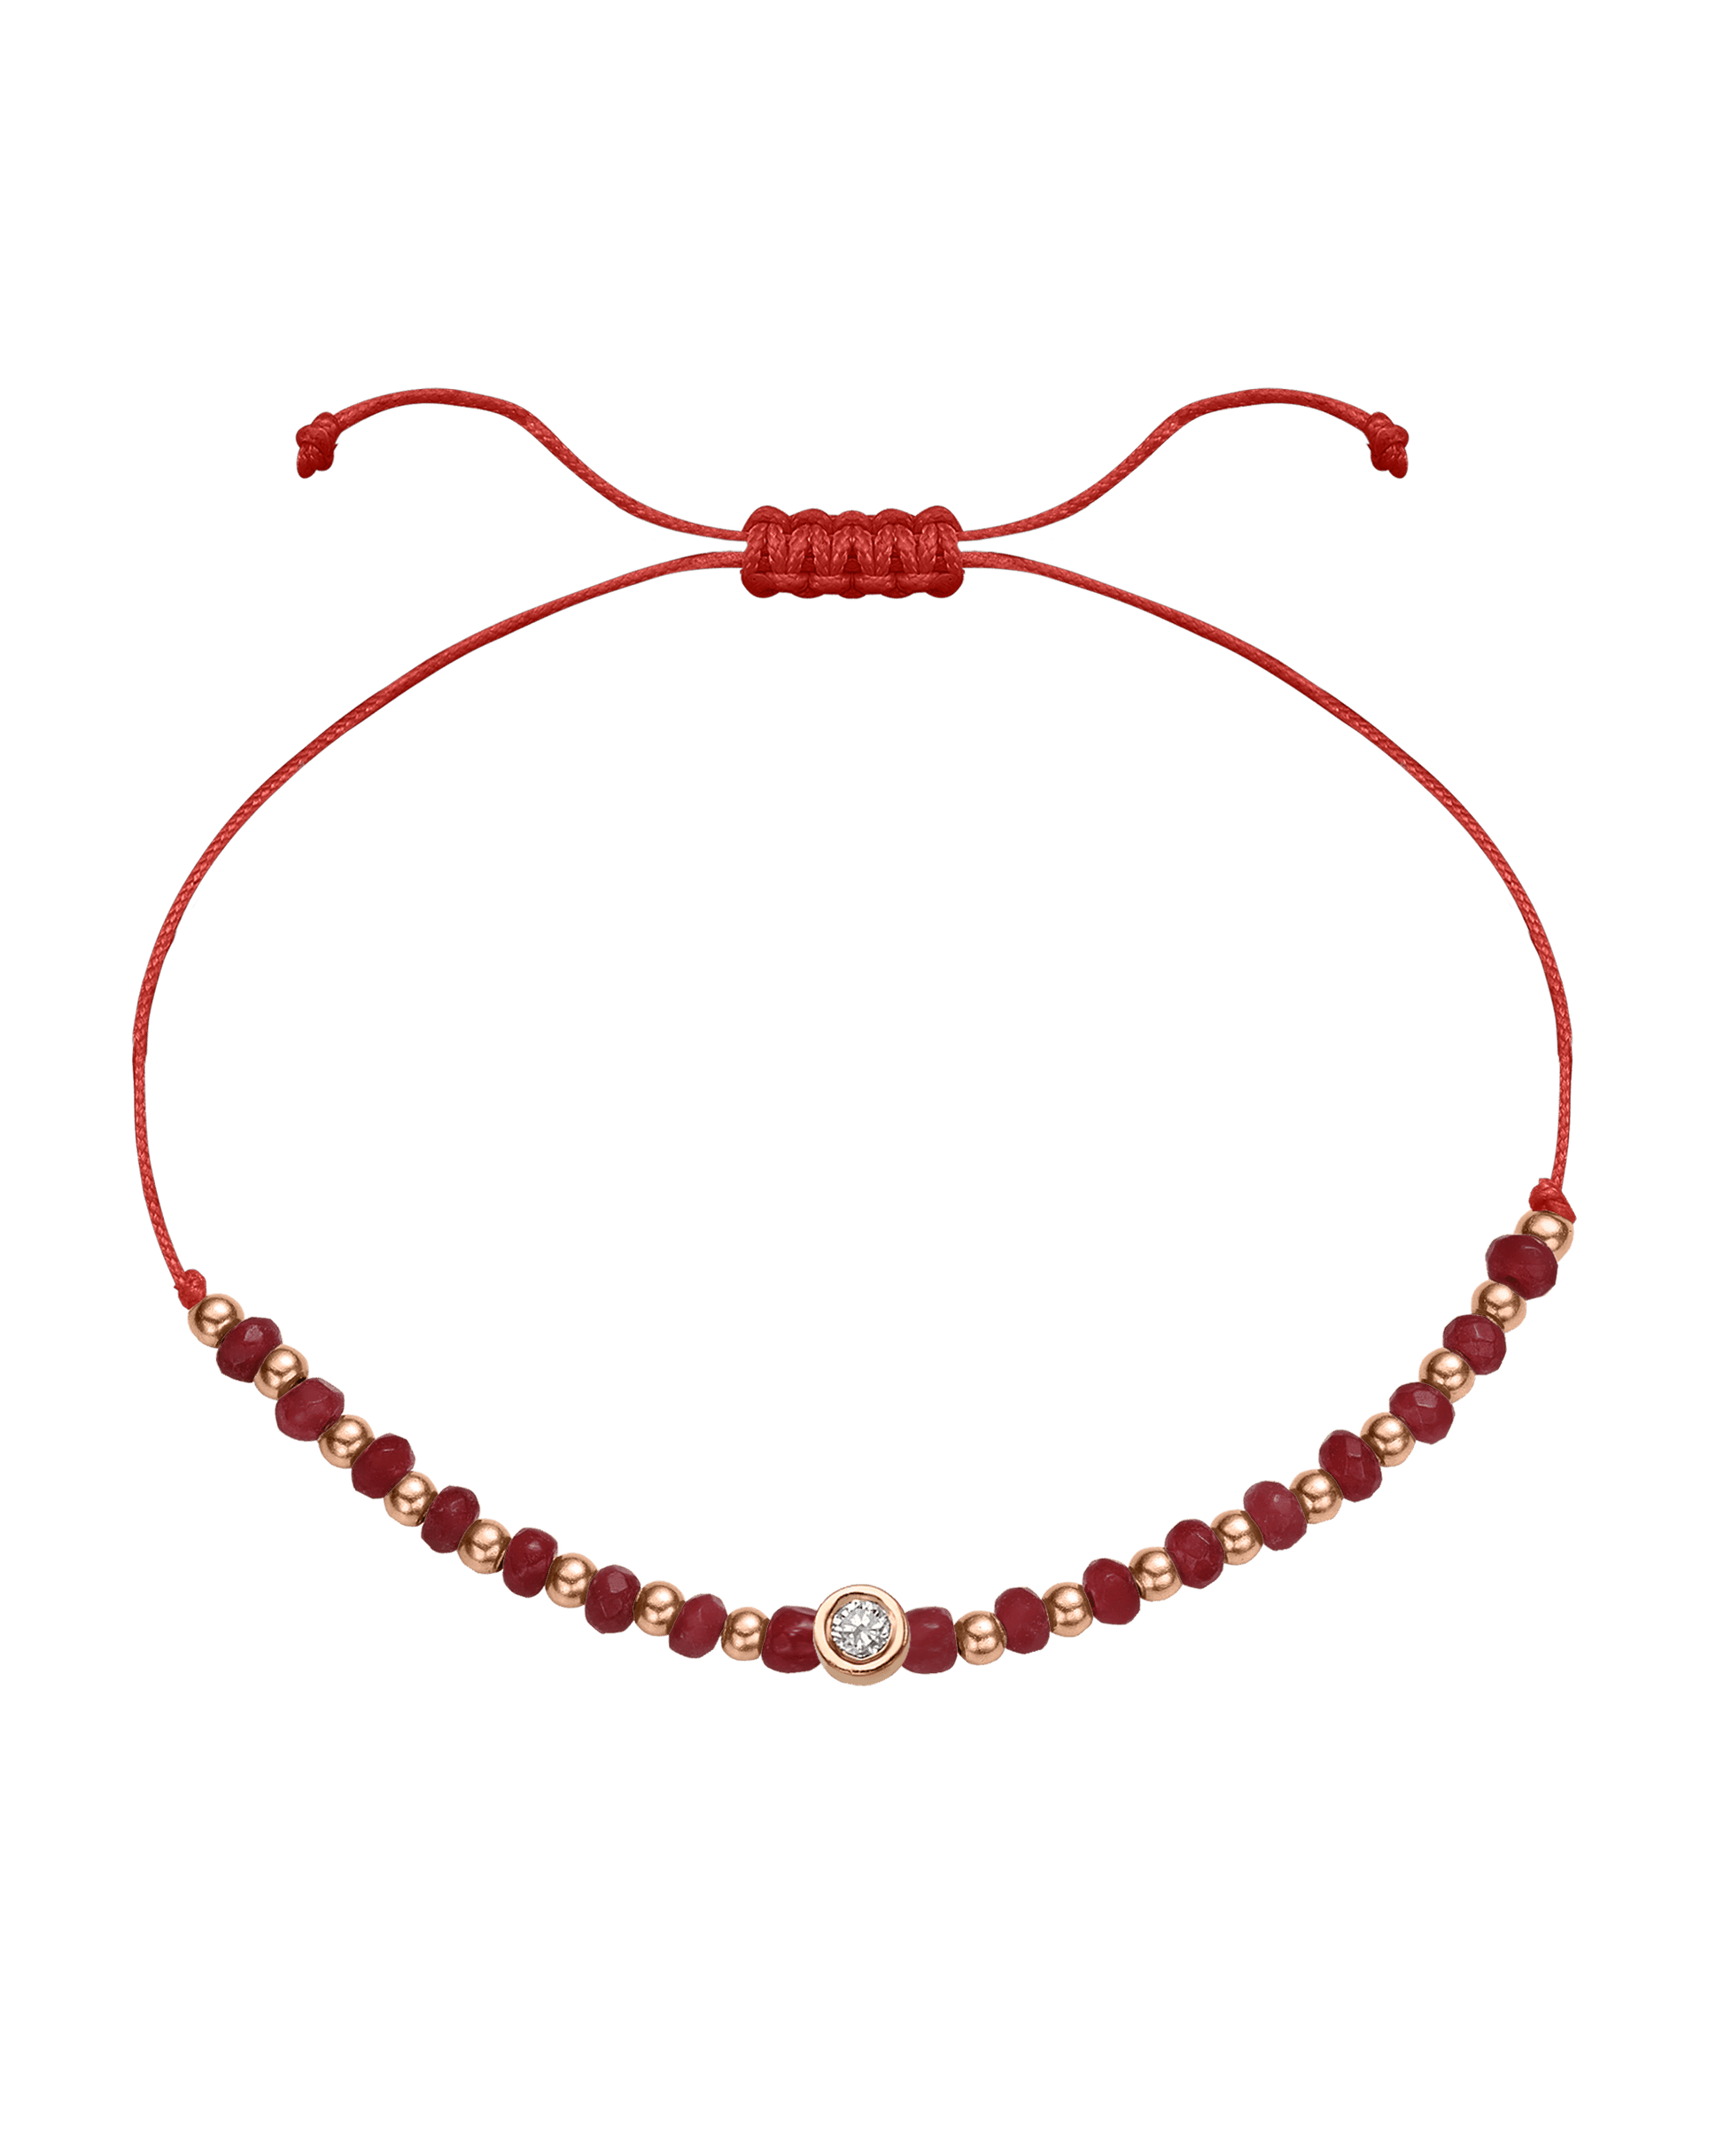 Red Agate Gemstone String of Love Bracelet for Confidence - 14K Rose Gold Bracelet 14K Solid Gold Red Medium: 0.04ct 